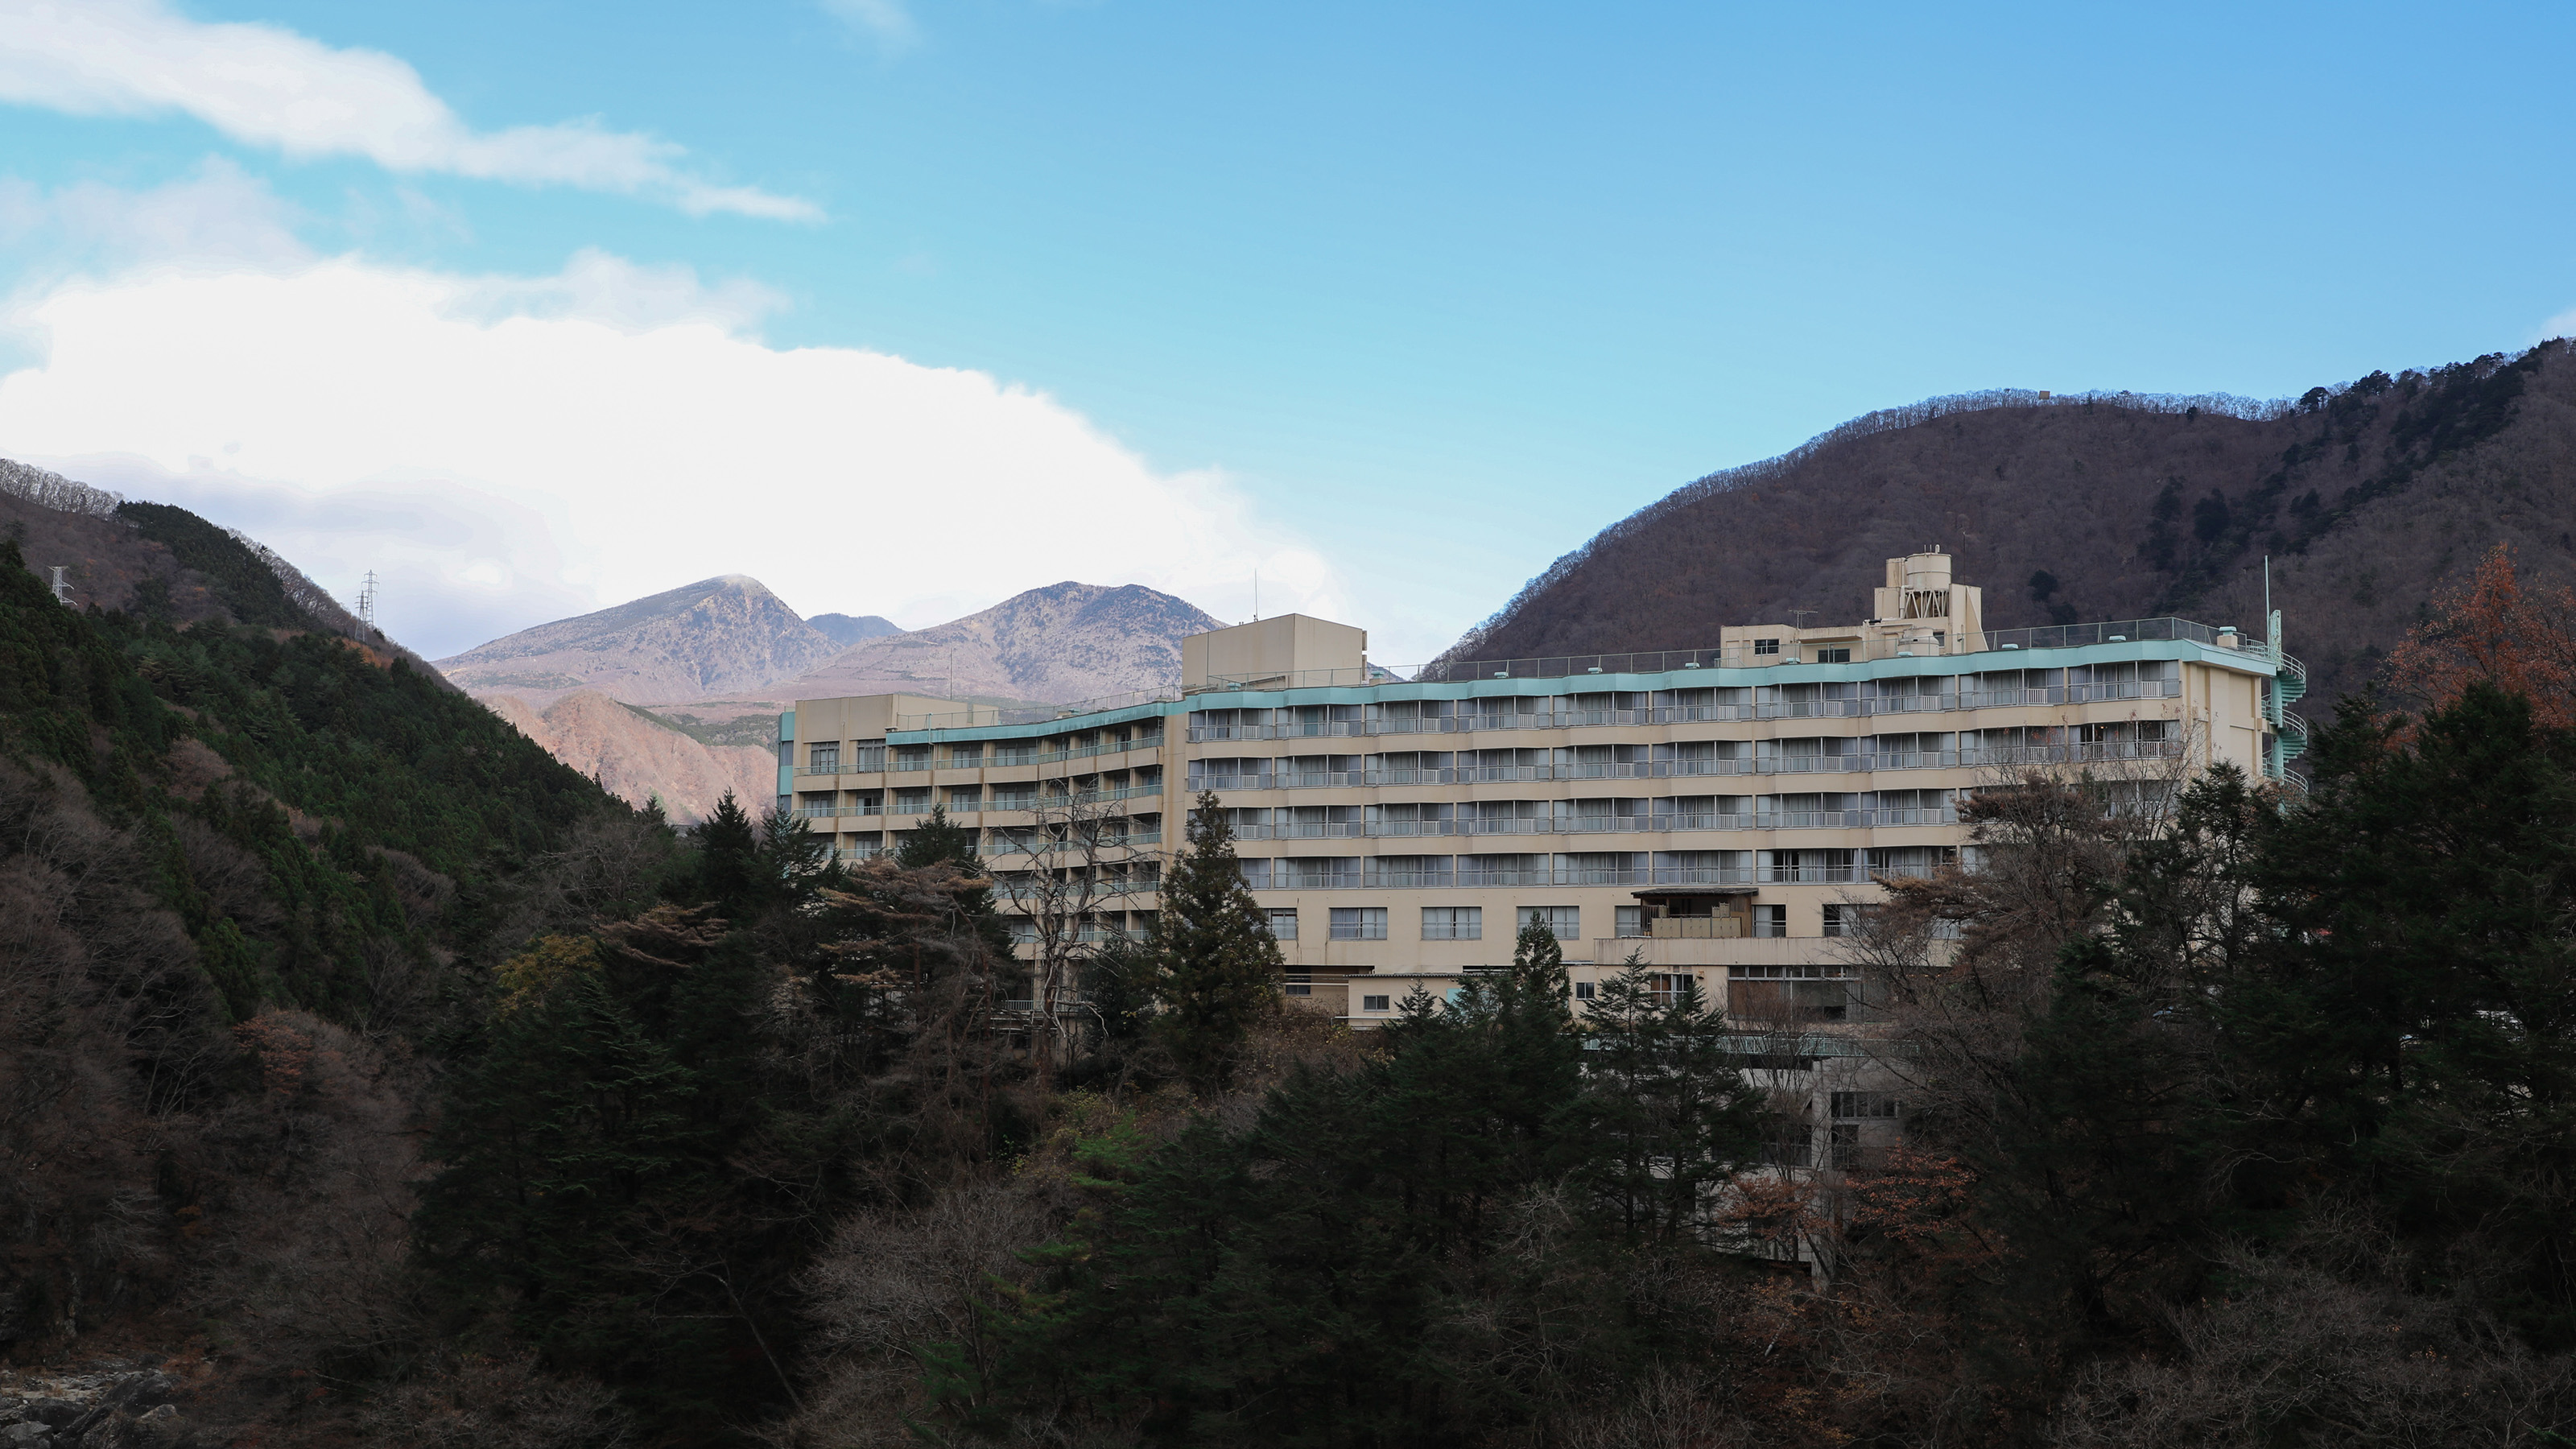 Kinugawa Royal Hotel